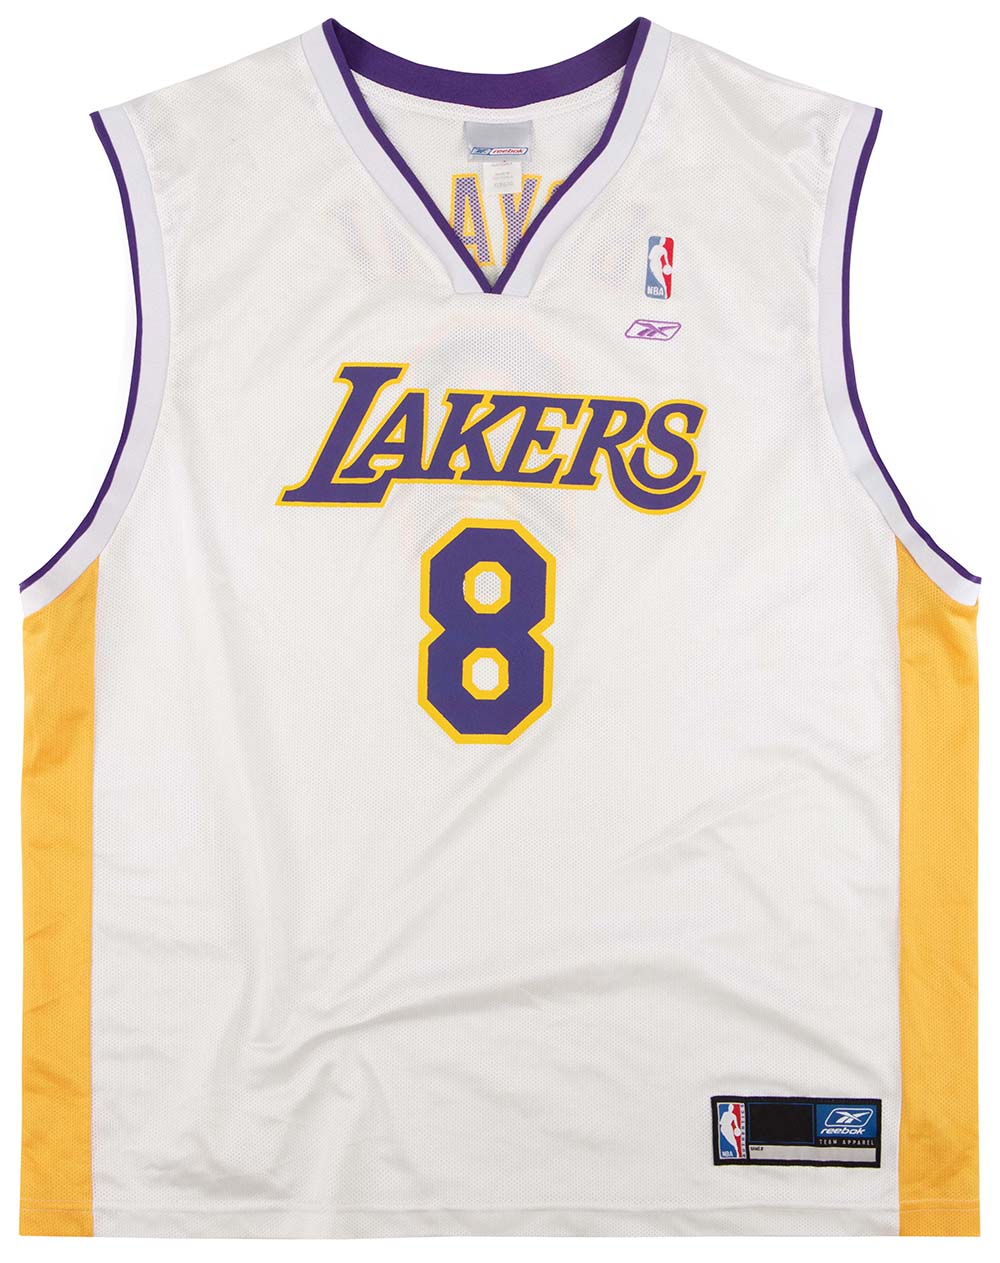 Lakers Kobe Bryant #8 NBA JERSEY